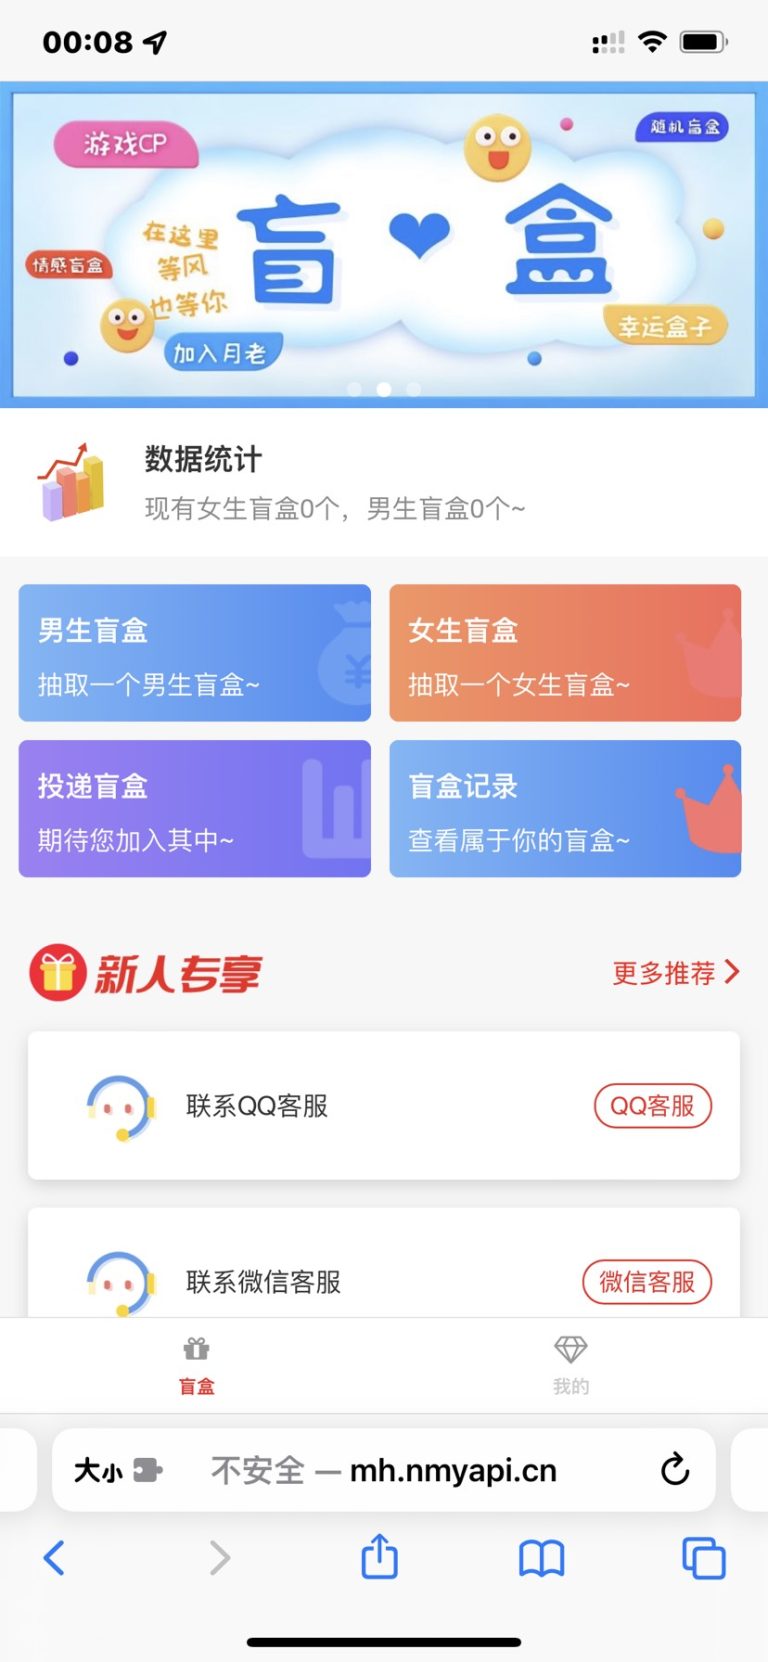 php交友盲盒源码免公众号